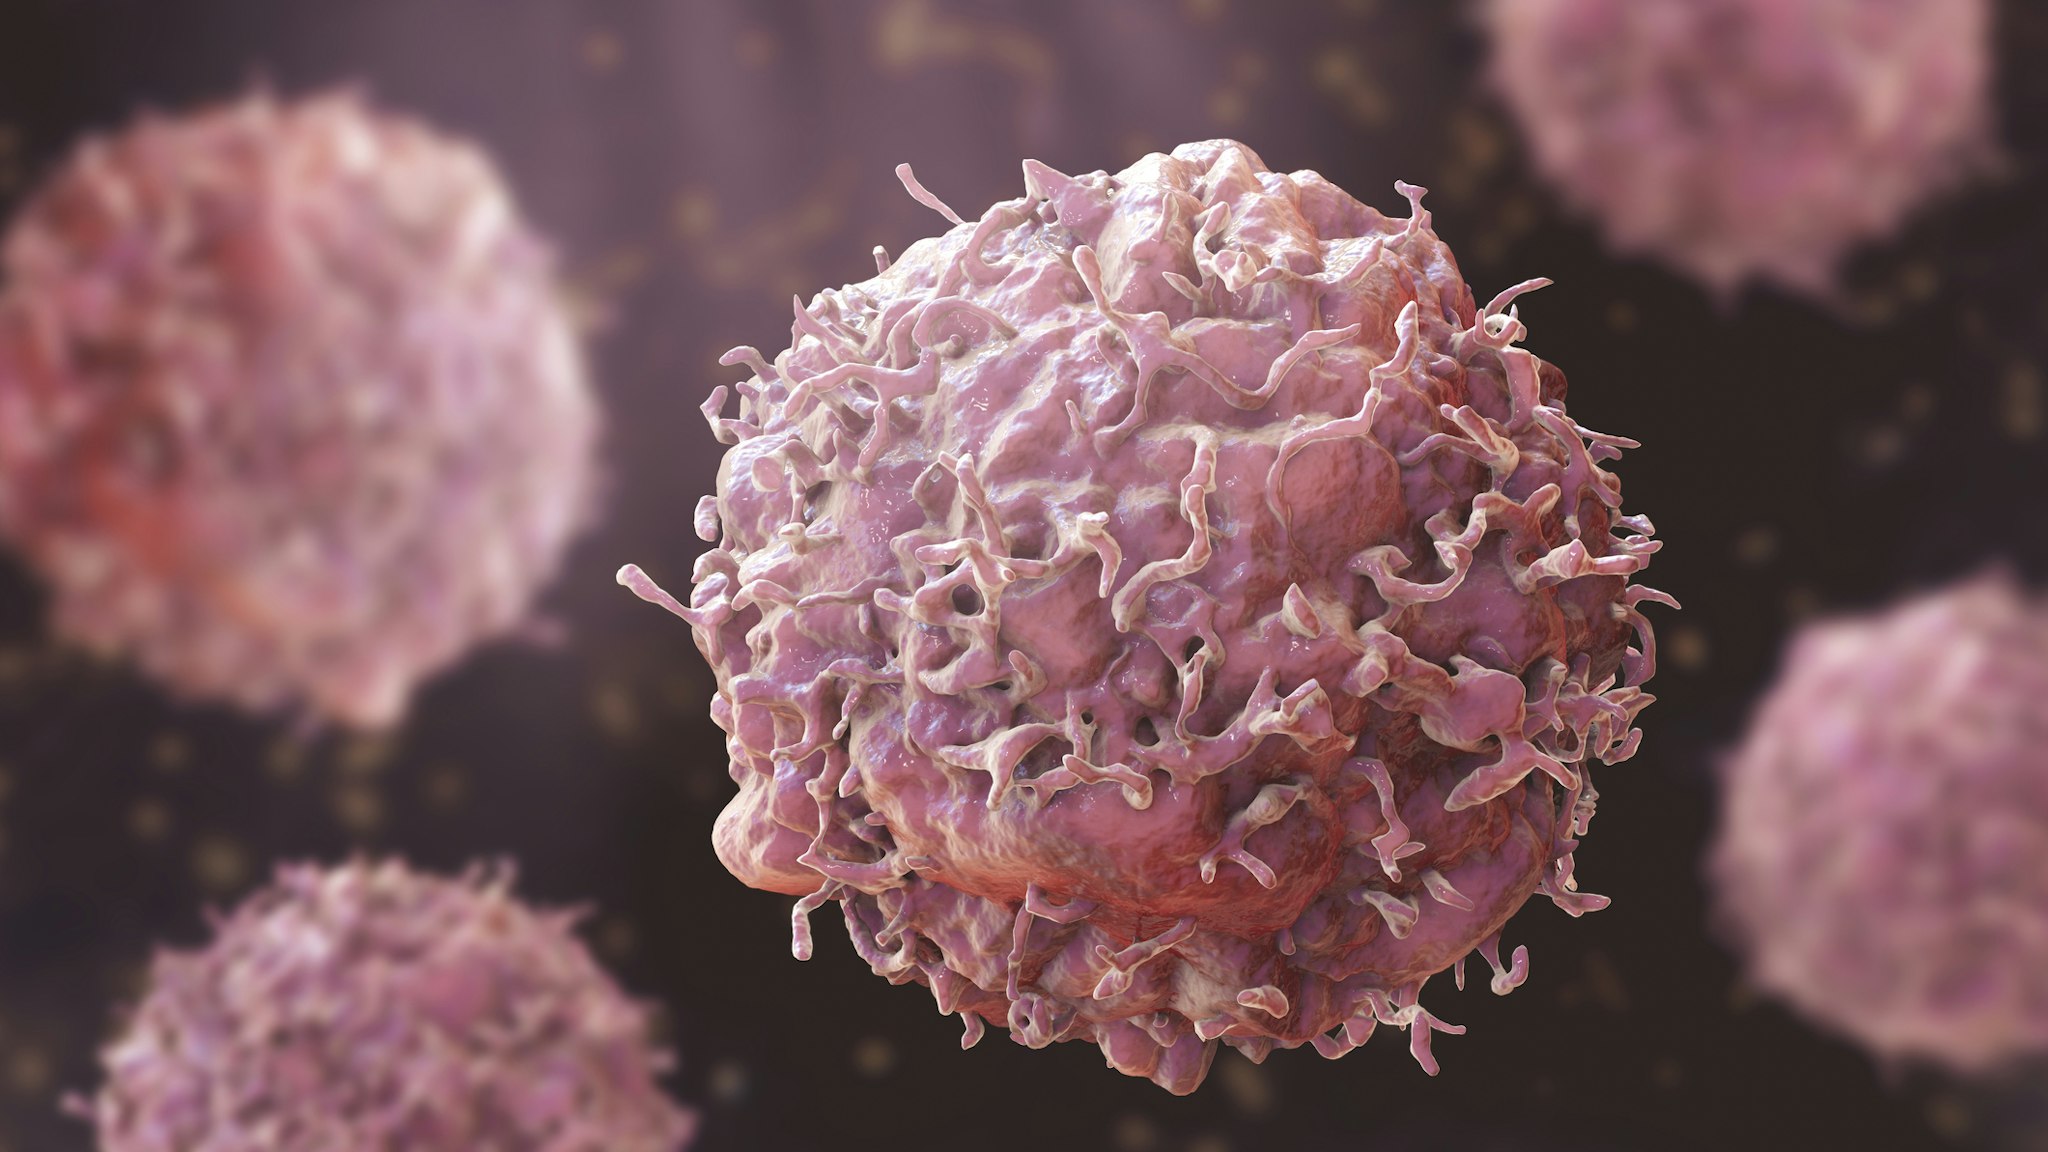 Cancer cells, illustration.